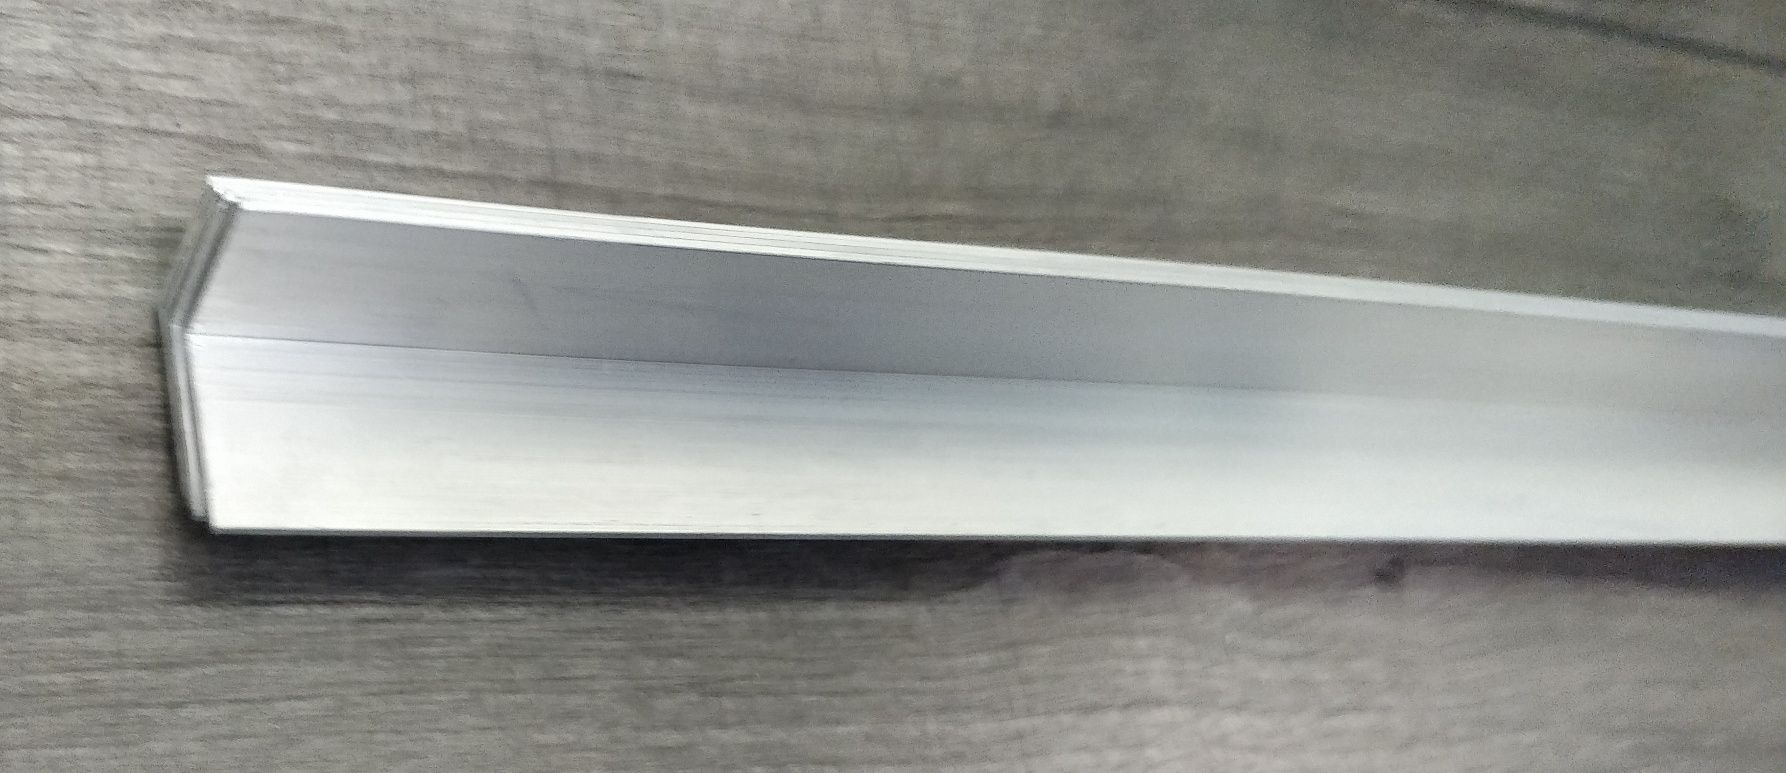 Уголок алюминиевый 25x25x1,5 мм длина 88 см анодированный